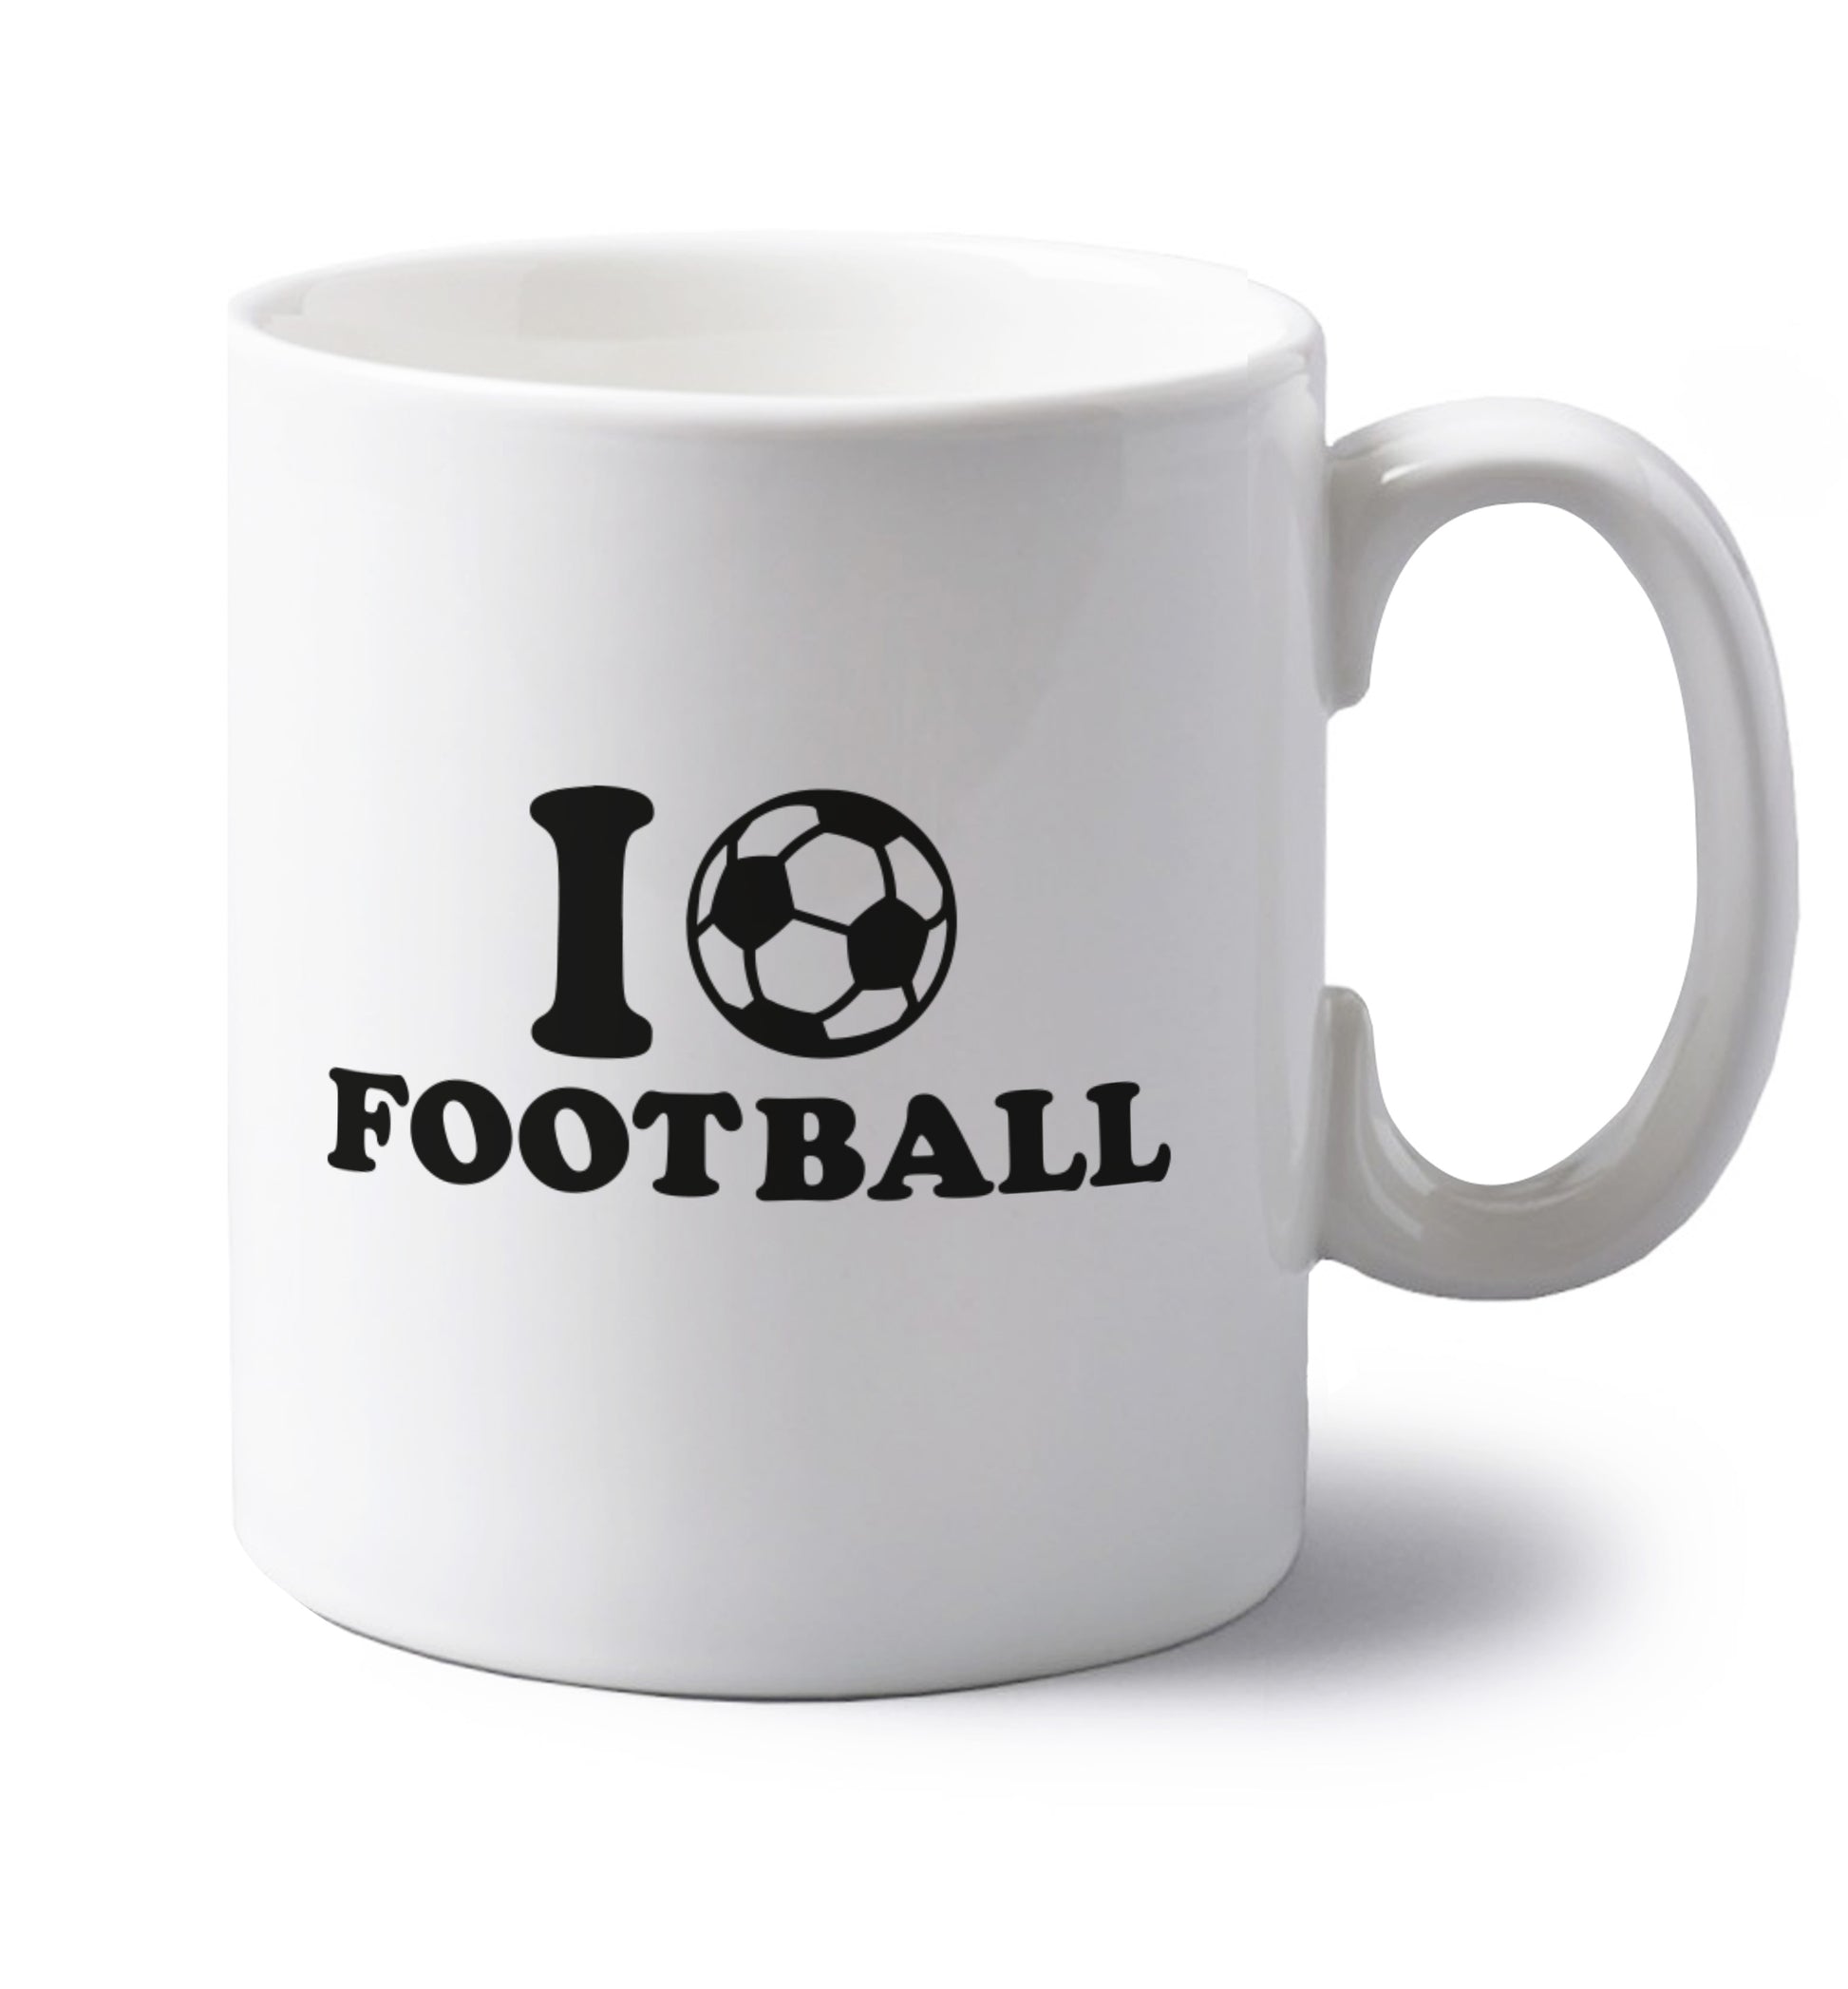 I love football left handed white ceramic mug 